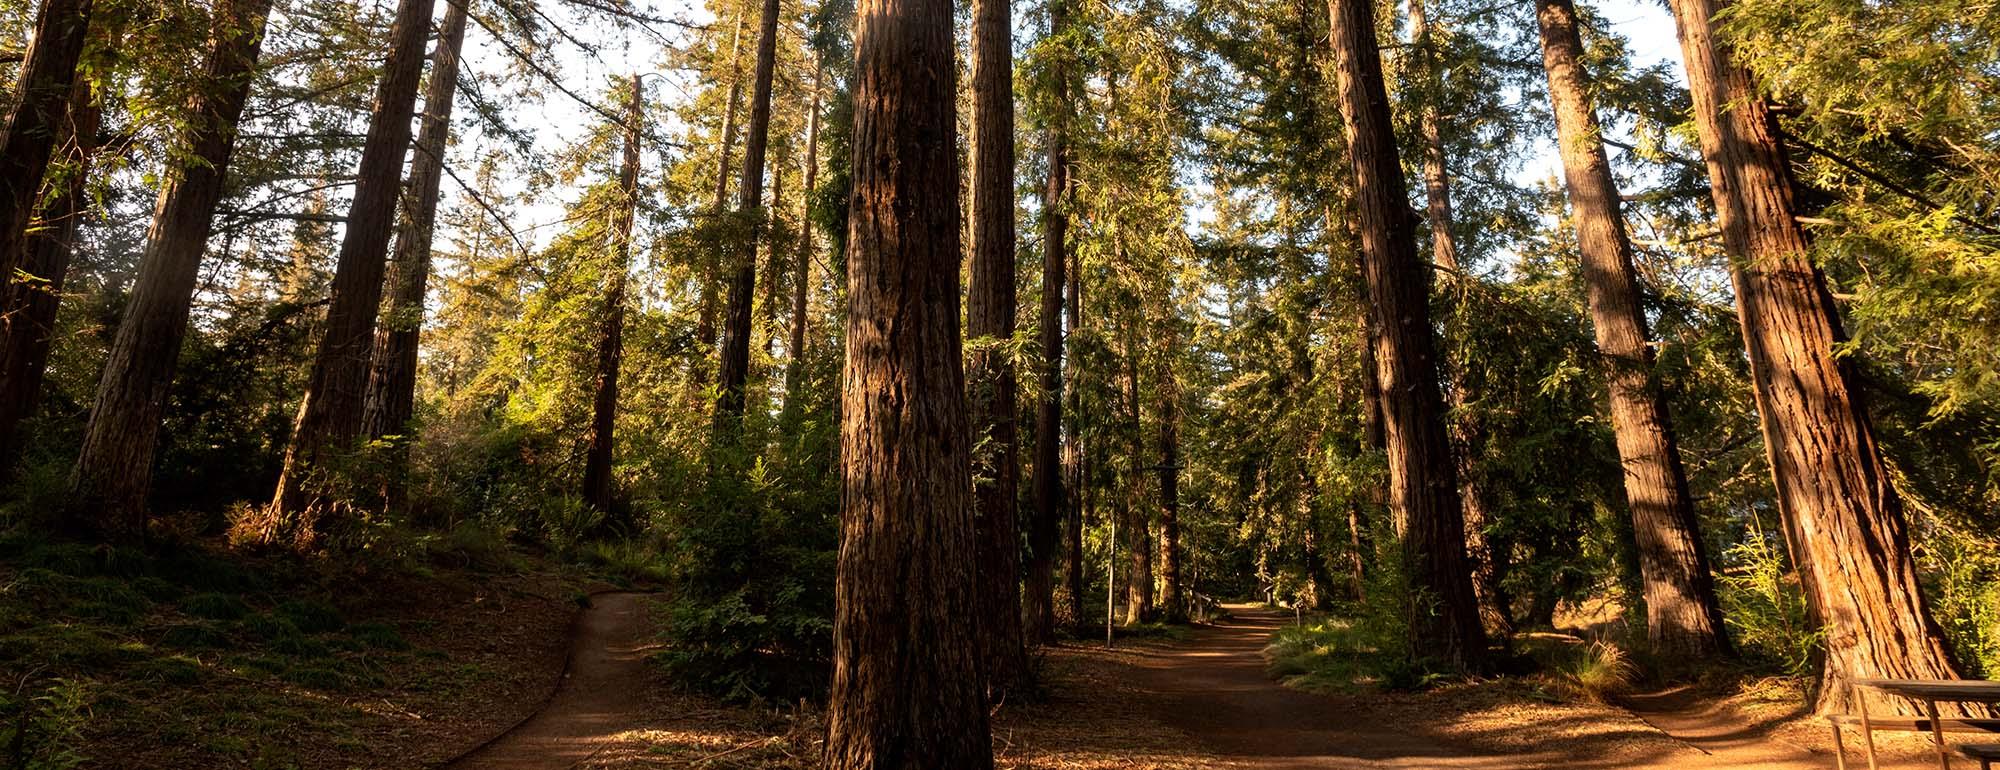 redwoods at uc davis arboretum